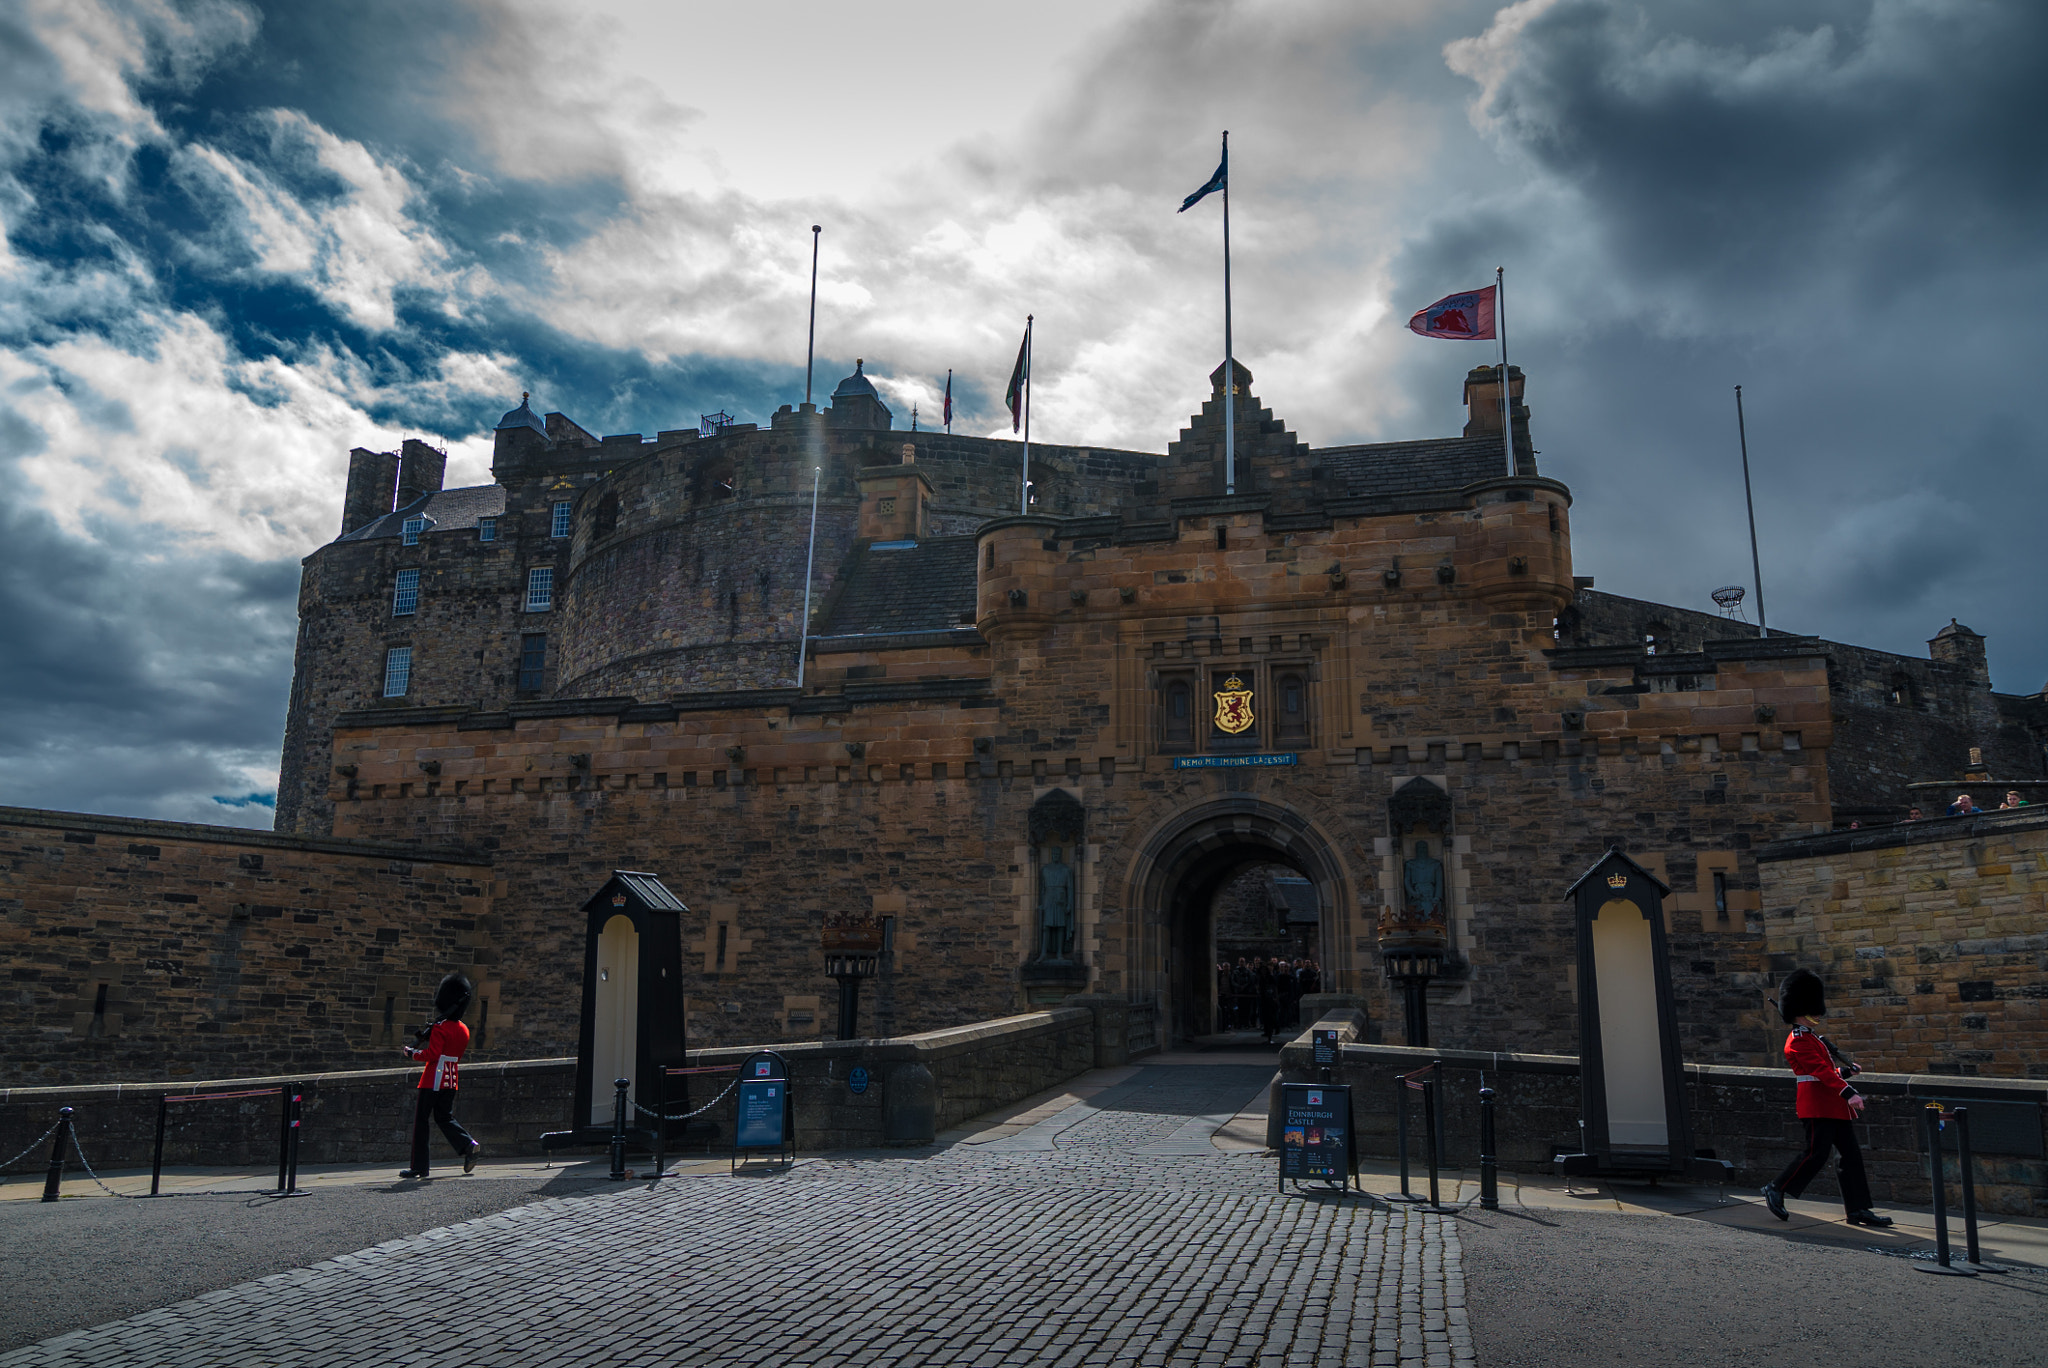 Sony a7S sample photo. Edinburgh castle photography